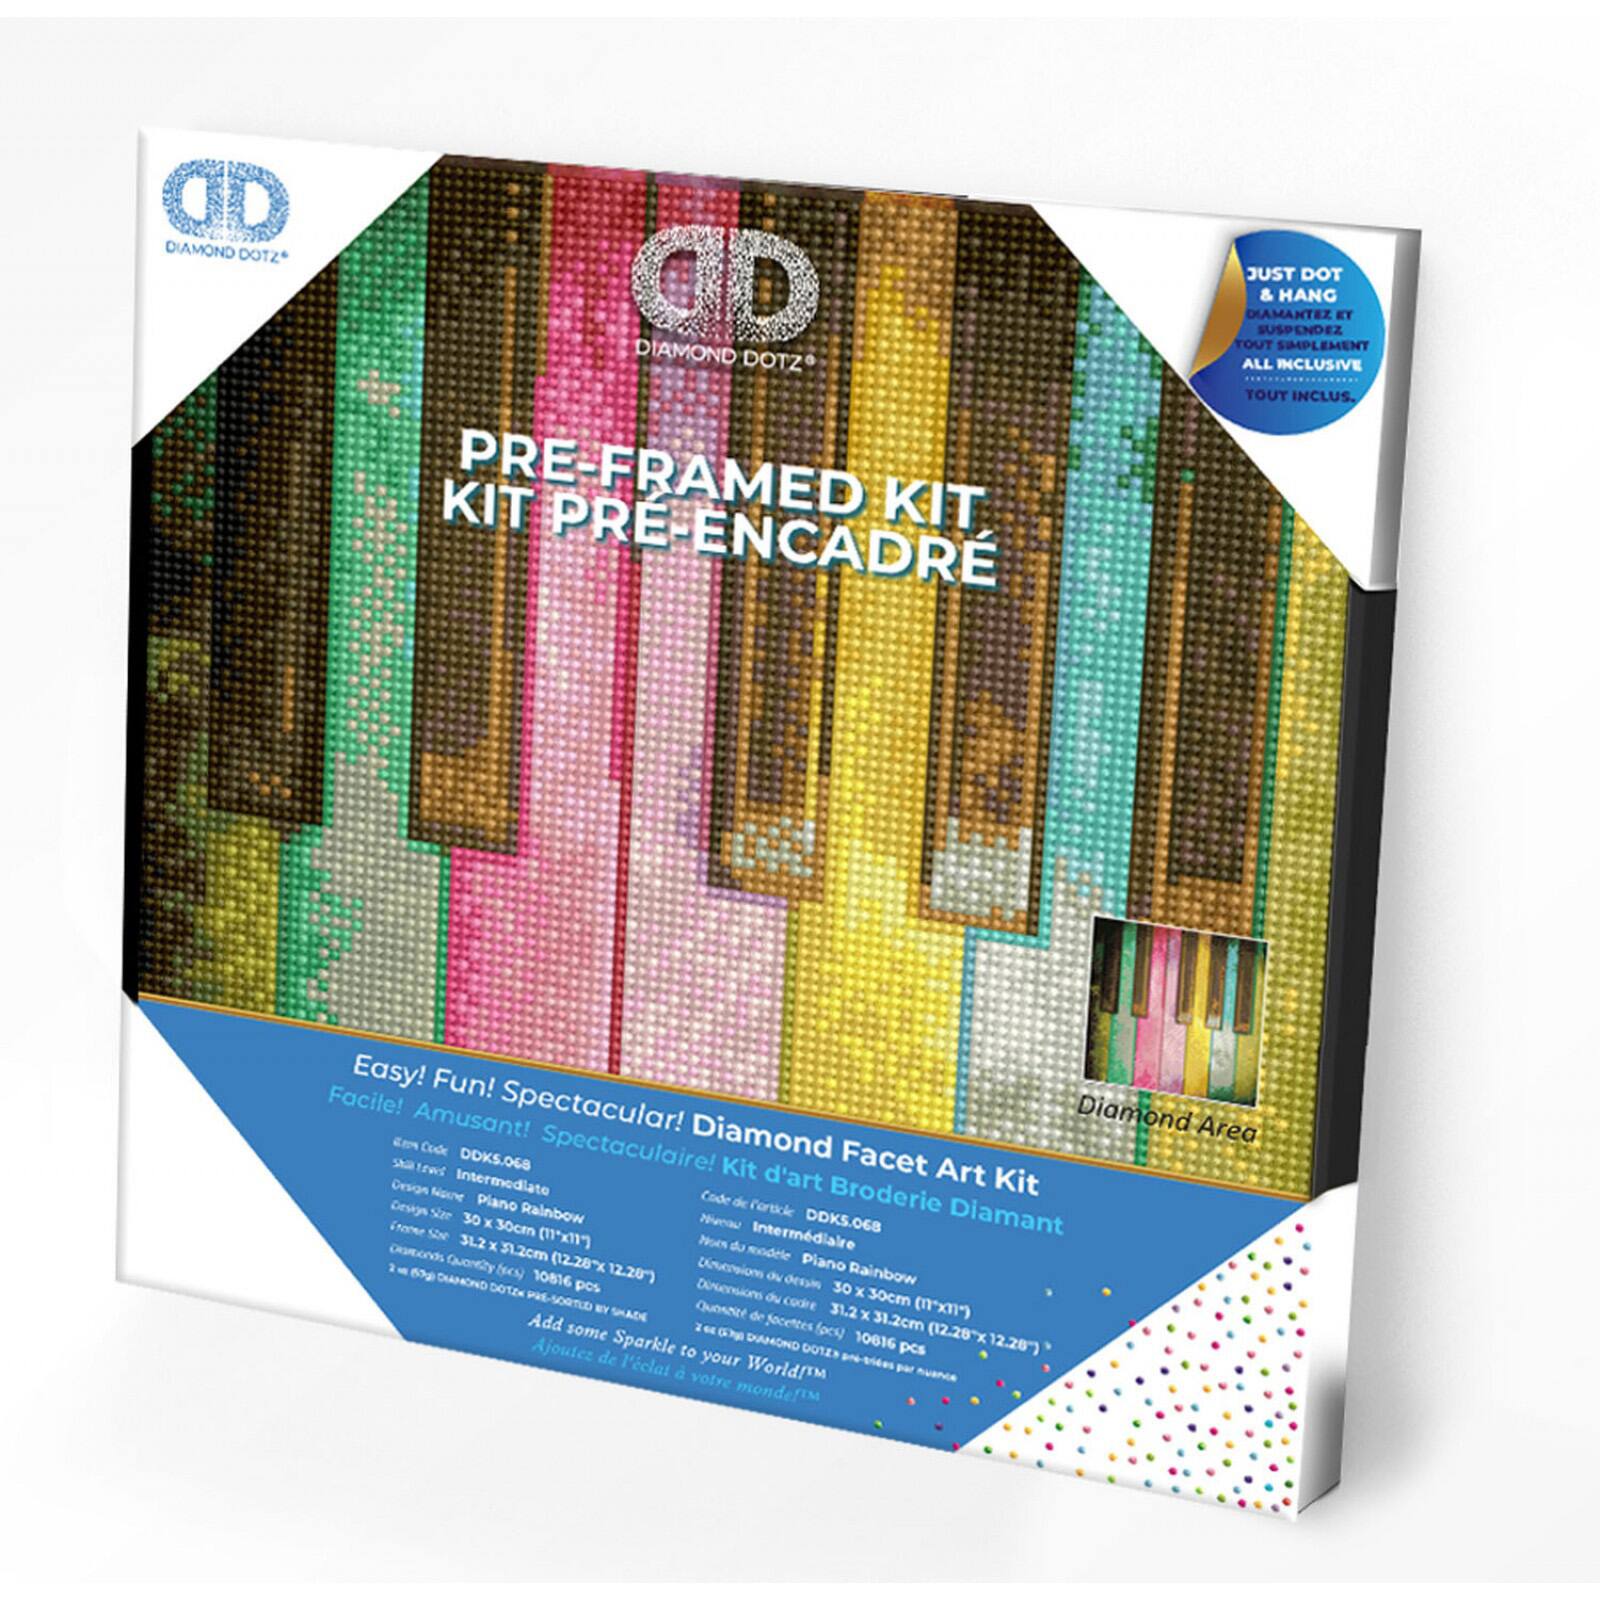 Diamond Dotz&#xAE; Intermediate Piano Rainbow with Frame Diamond Painting Kit